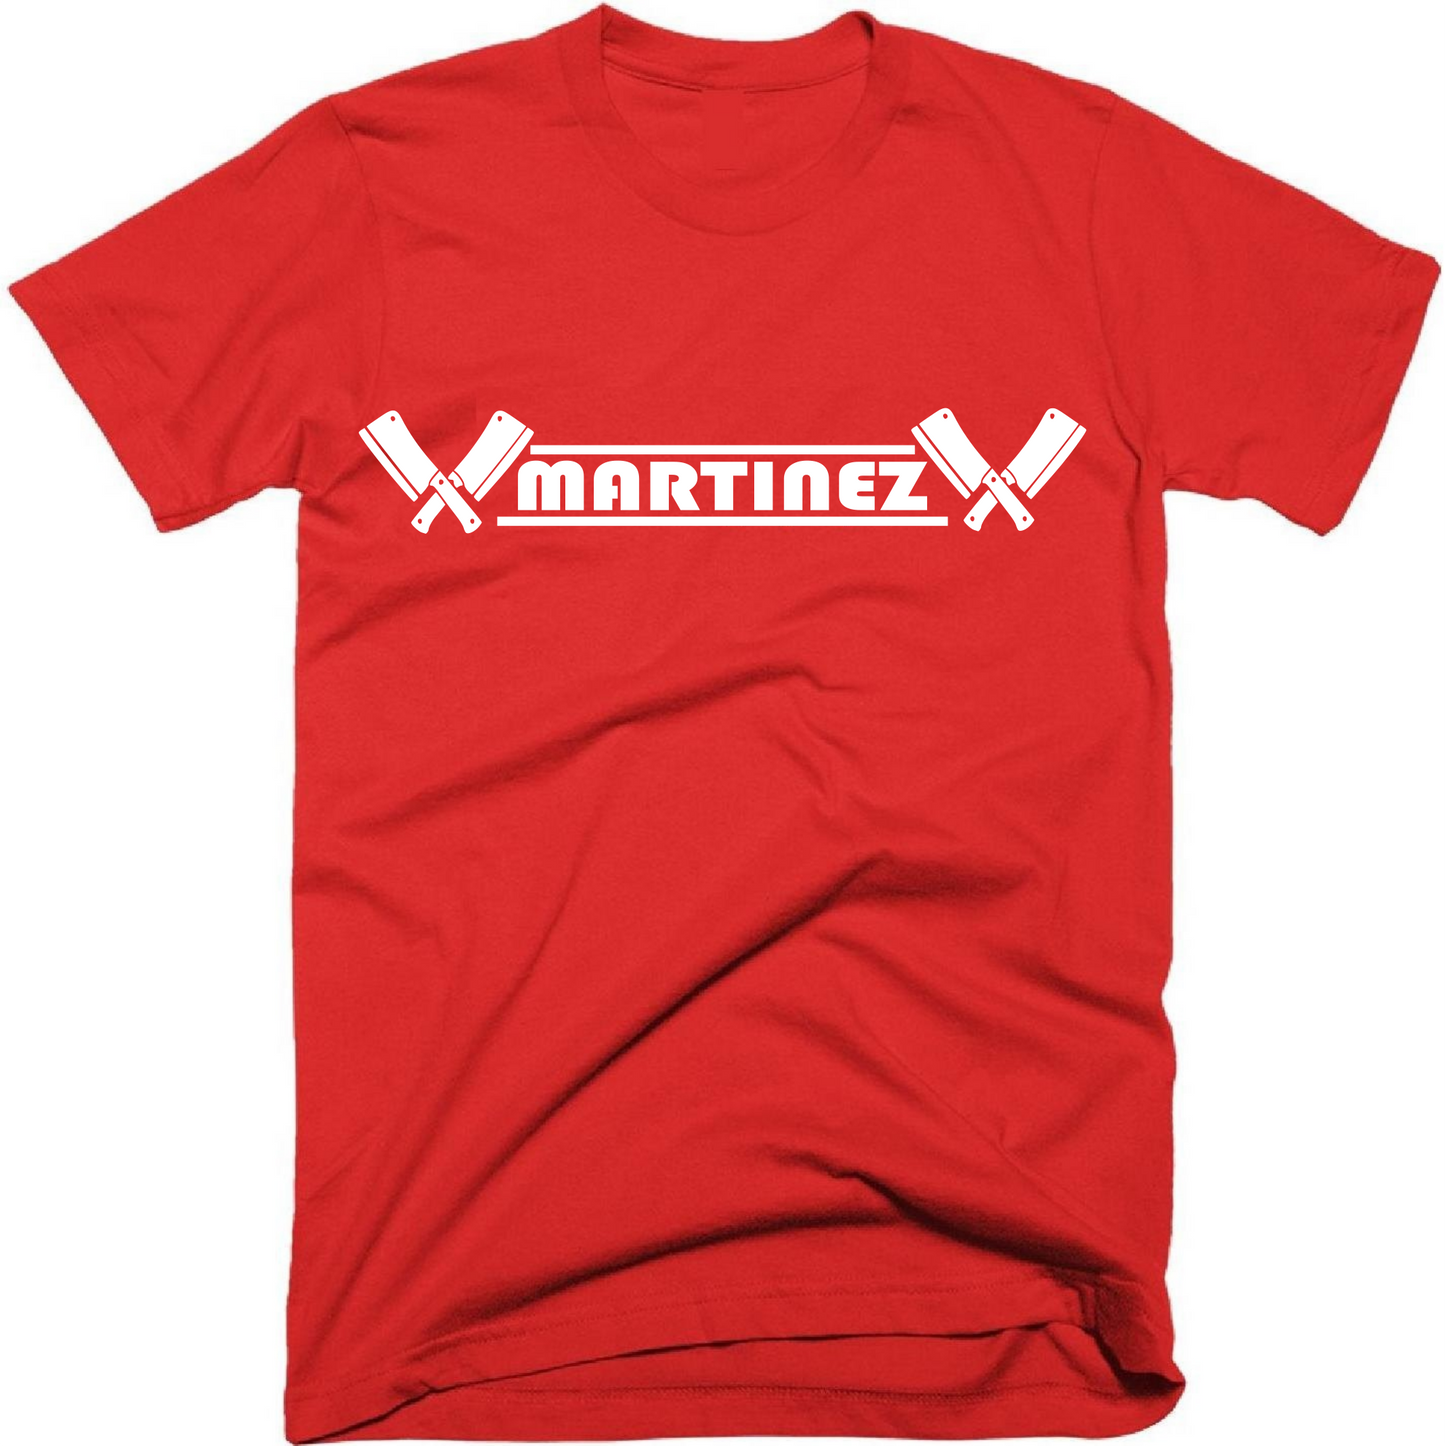 Martinez the Butcher T-Shirt